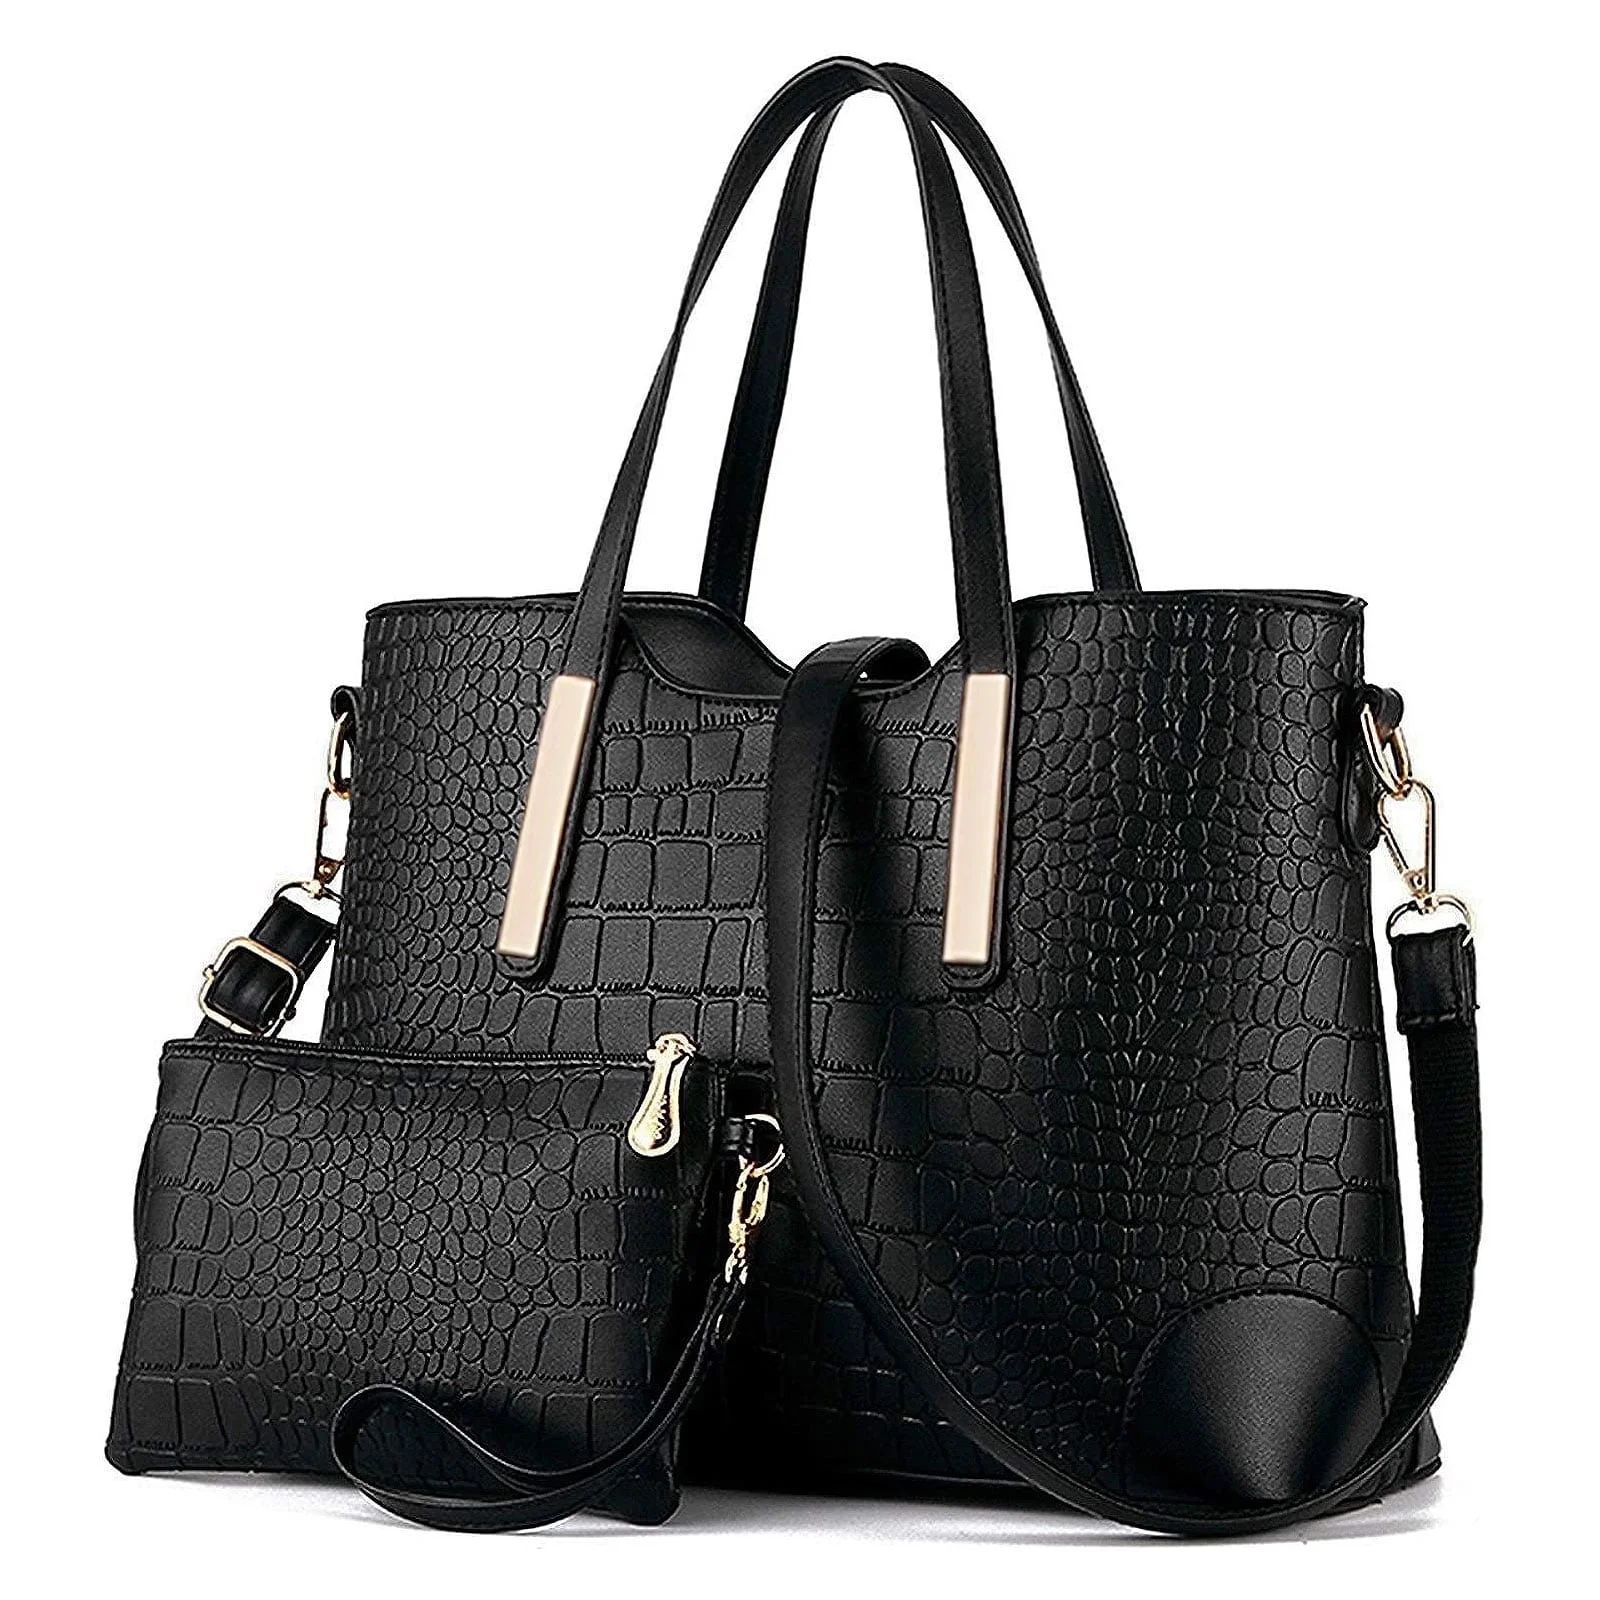 YNIQUE Satchel Purses and Handbags for Women Shoulder Tote Bags Wallets - Walmart.com | Walmart (US)